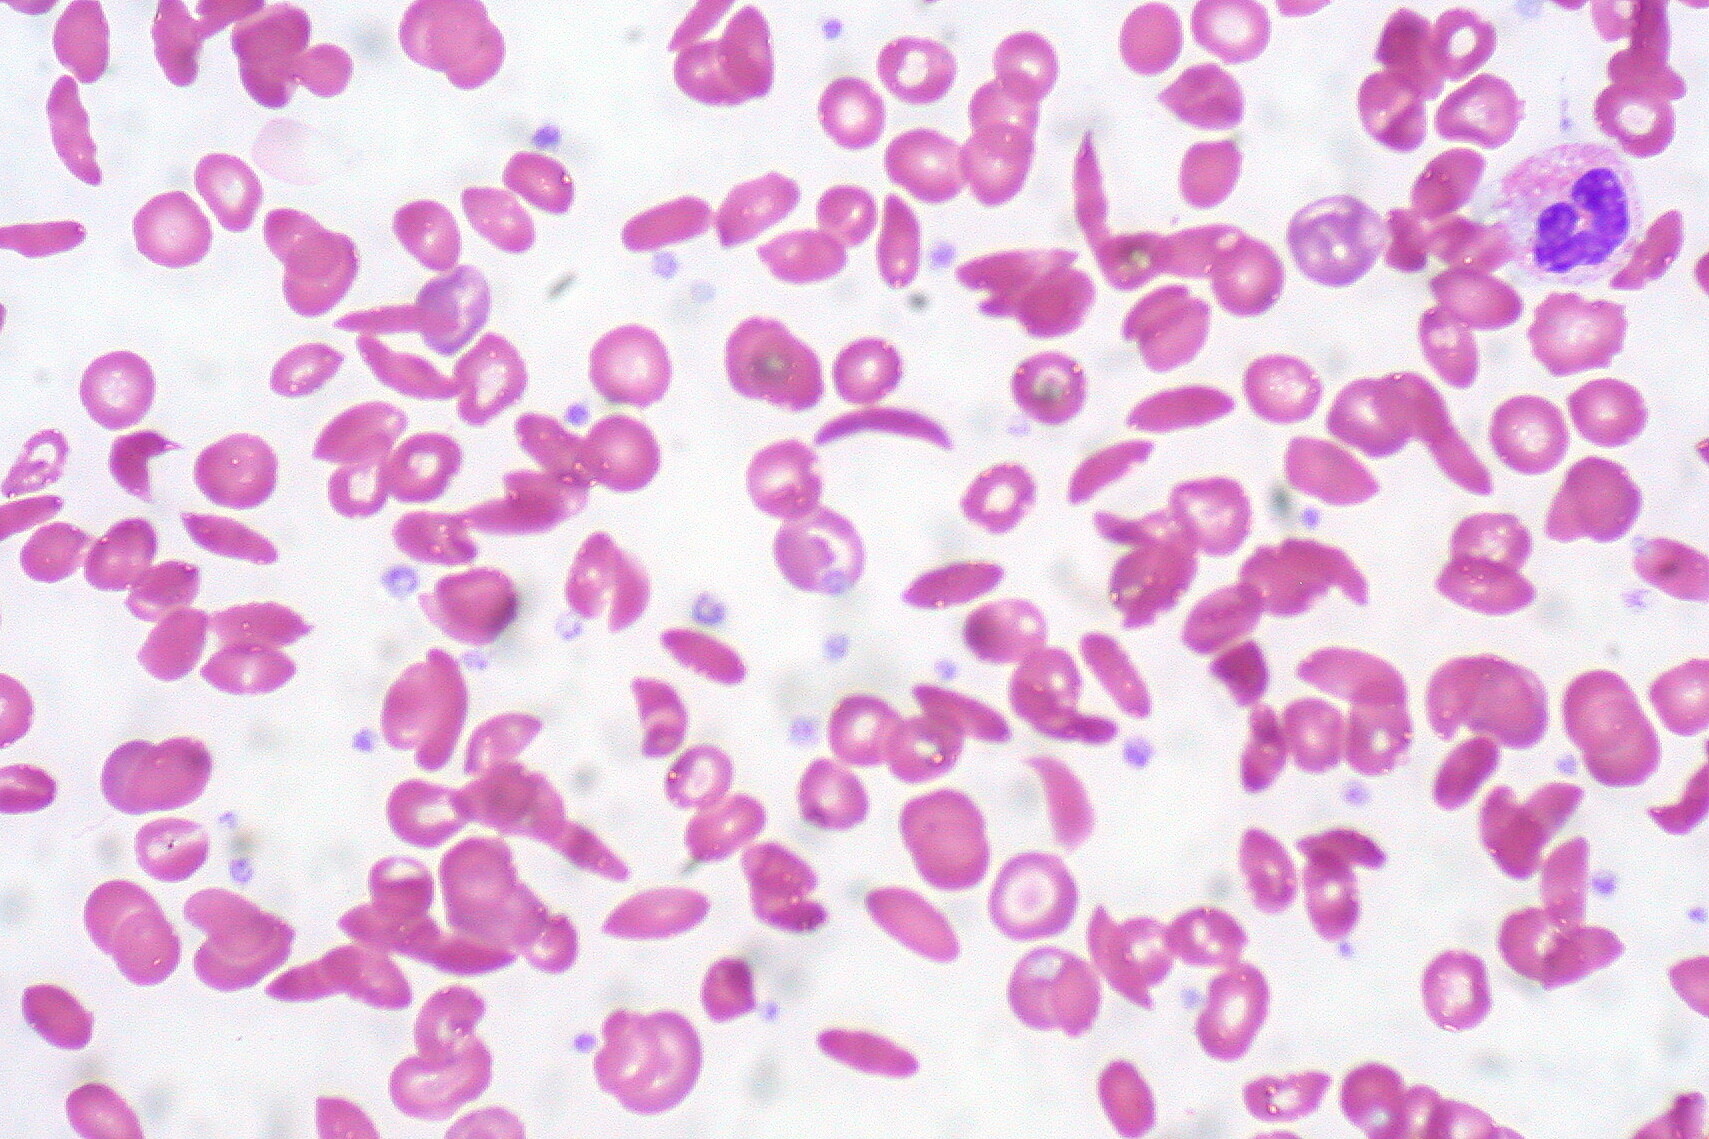 Die Sichelzellanämie ist Folge einer erblich bedingten Veränderung des roten Blutfarbstoffs Hämoglobin in den roten Blutzellen. © Ed Uthmann